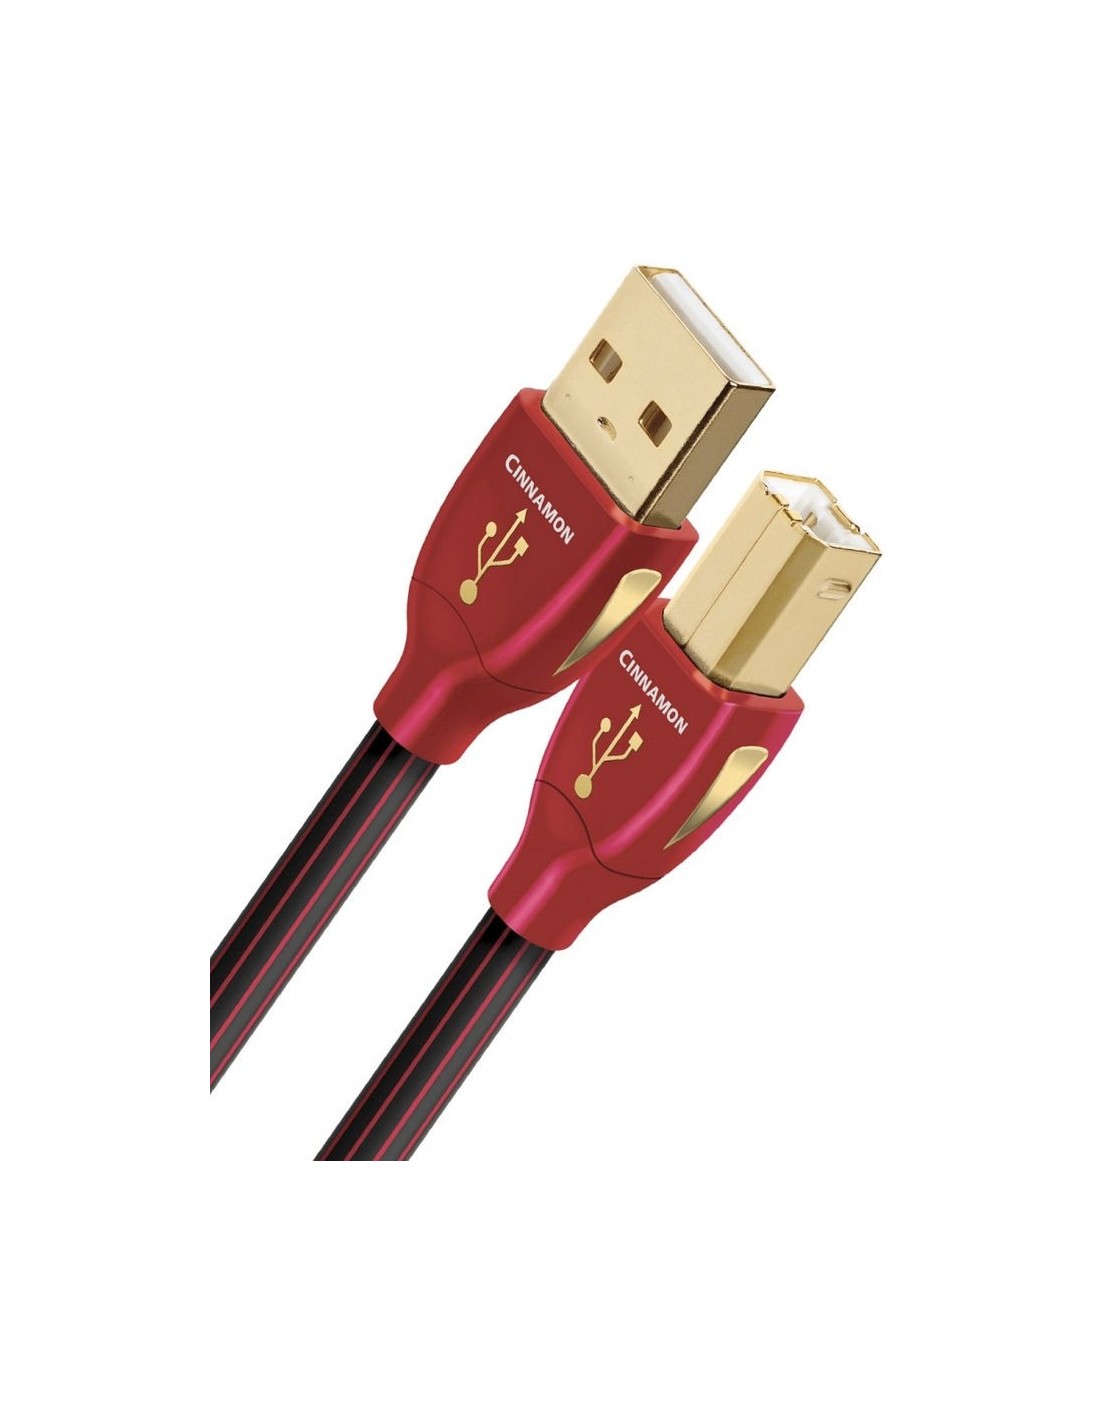 Souris filaire USB-A & USB-C SUNSET rouge